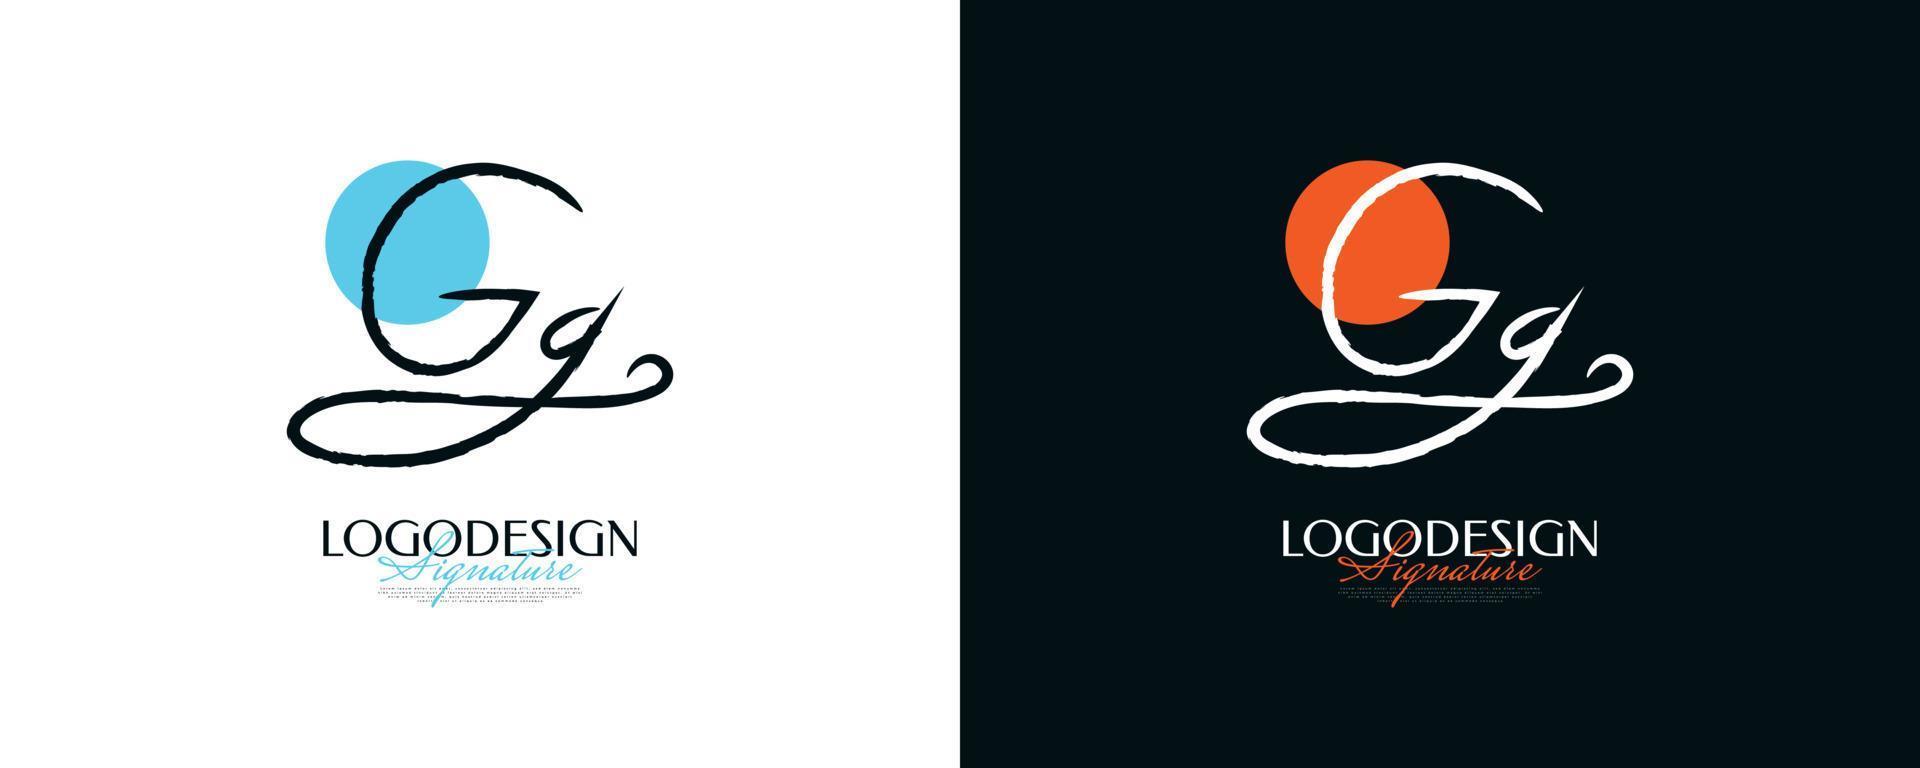 anfängliches g- und g-logo-design im eleganten und minimalistischen handschriftstil. gg-signaturlogo oder symbol für hochzeit, mode, schmuck, boutique und geschäftsidentität vektor